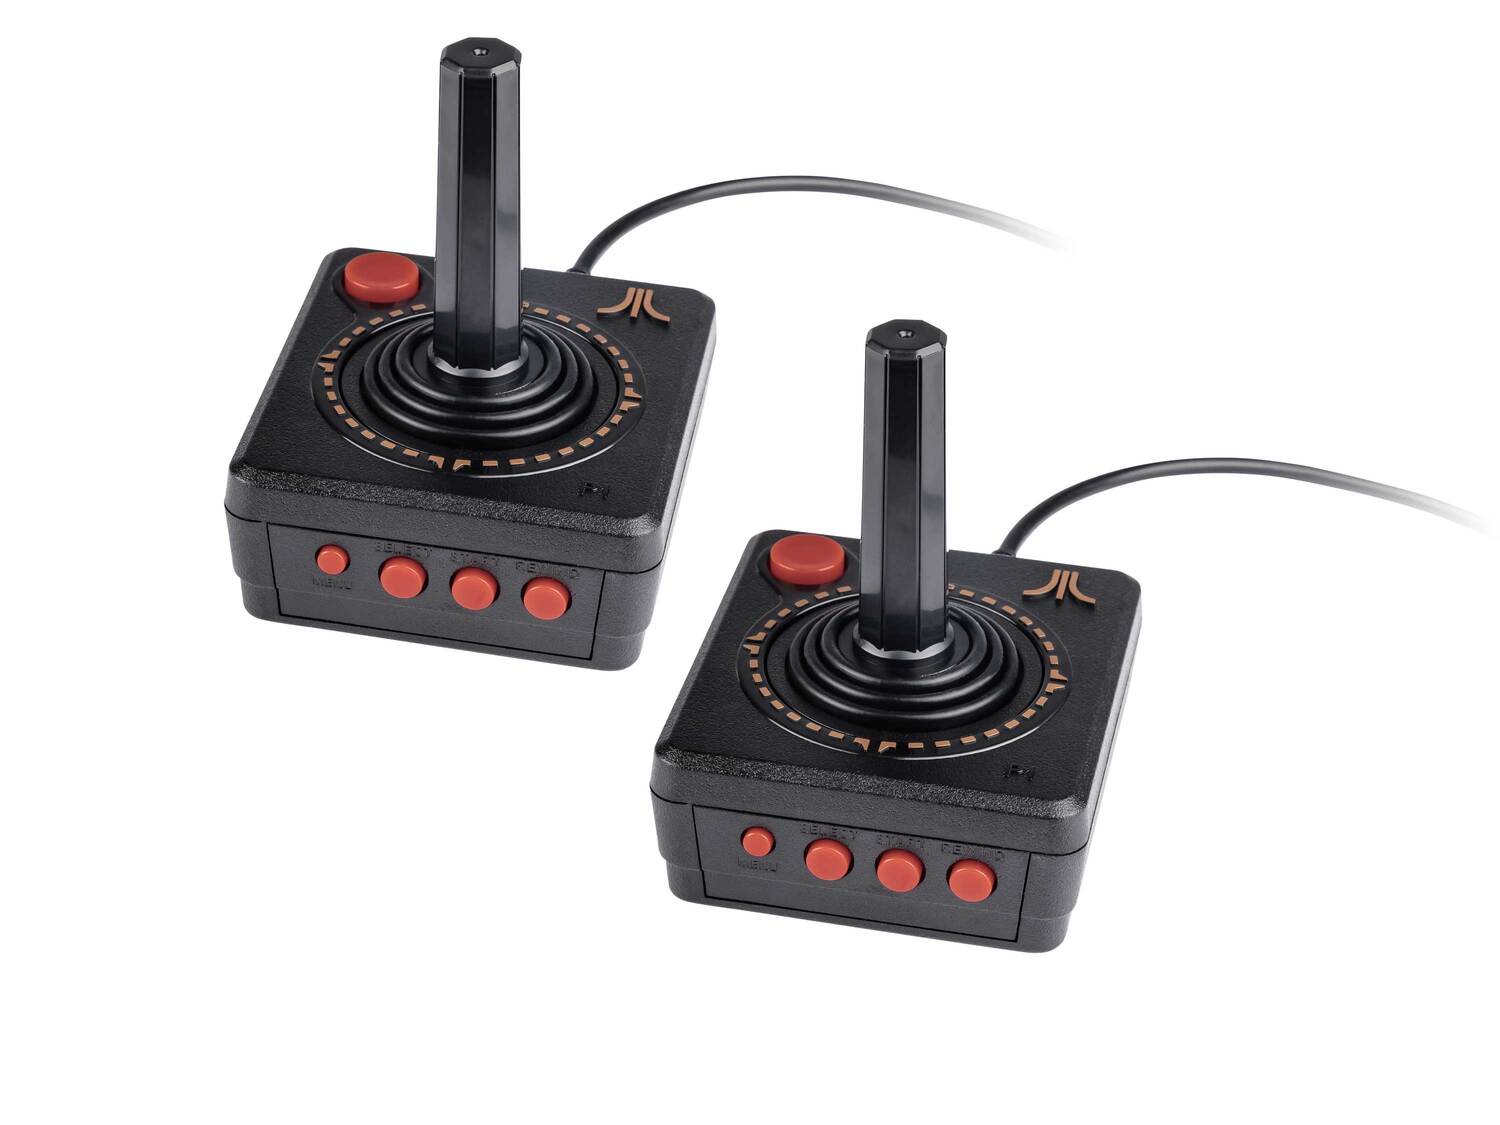 Konsola Atari 2600 jak z PRL Video Computer System 110 gier Atari, cena 299,00 PLN ...